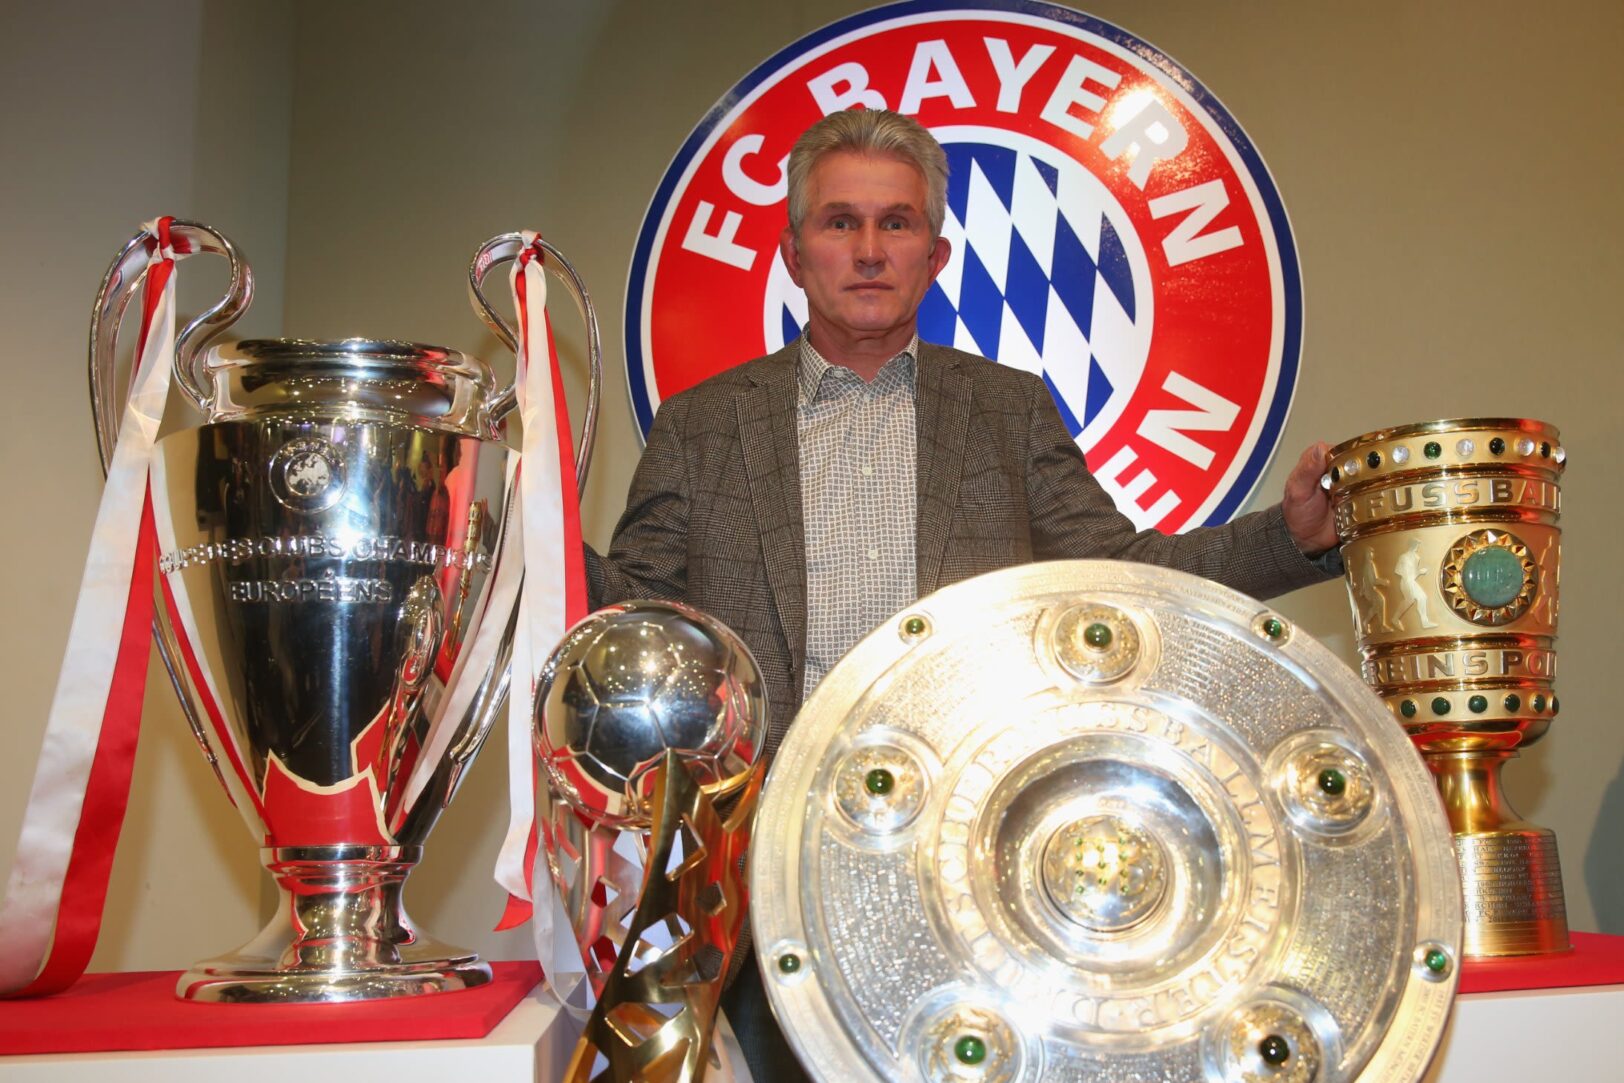 Jupp Heynckes - Bayern Munich (2013)